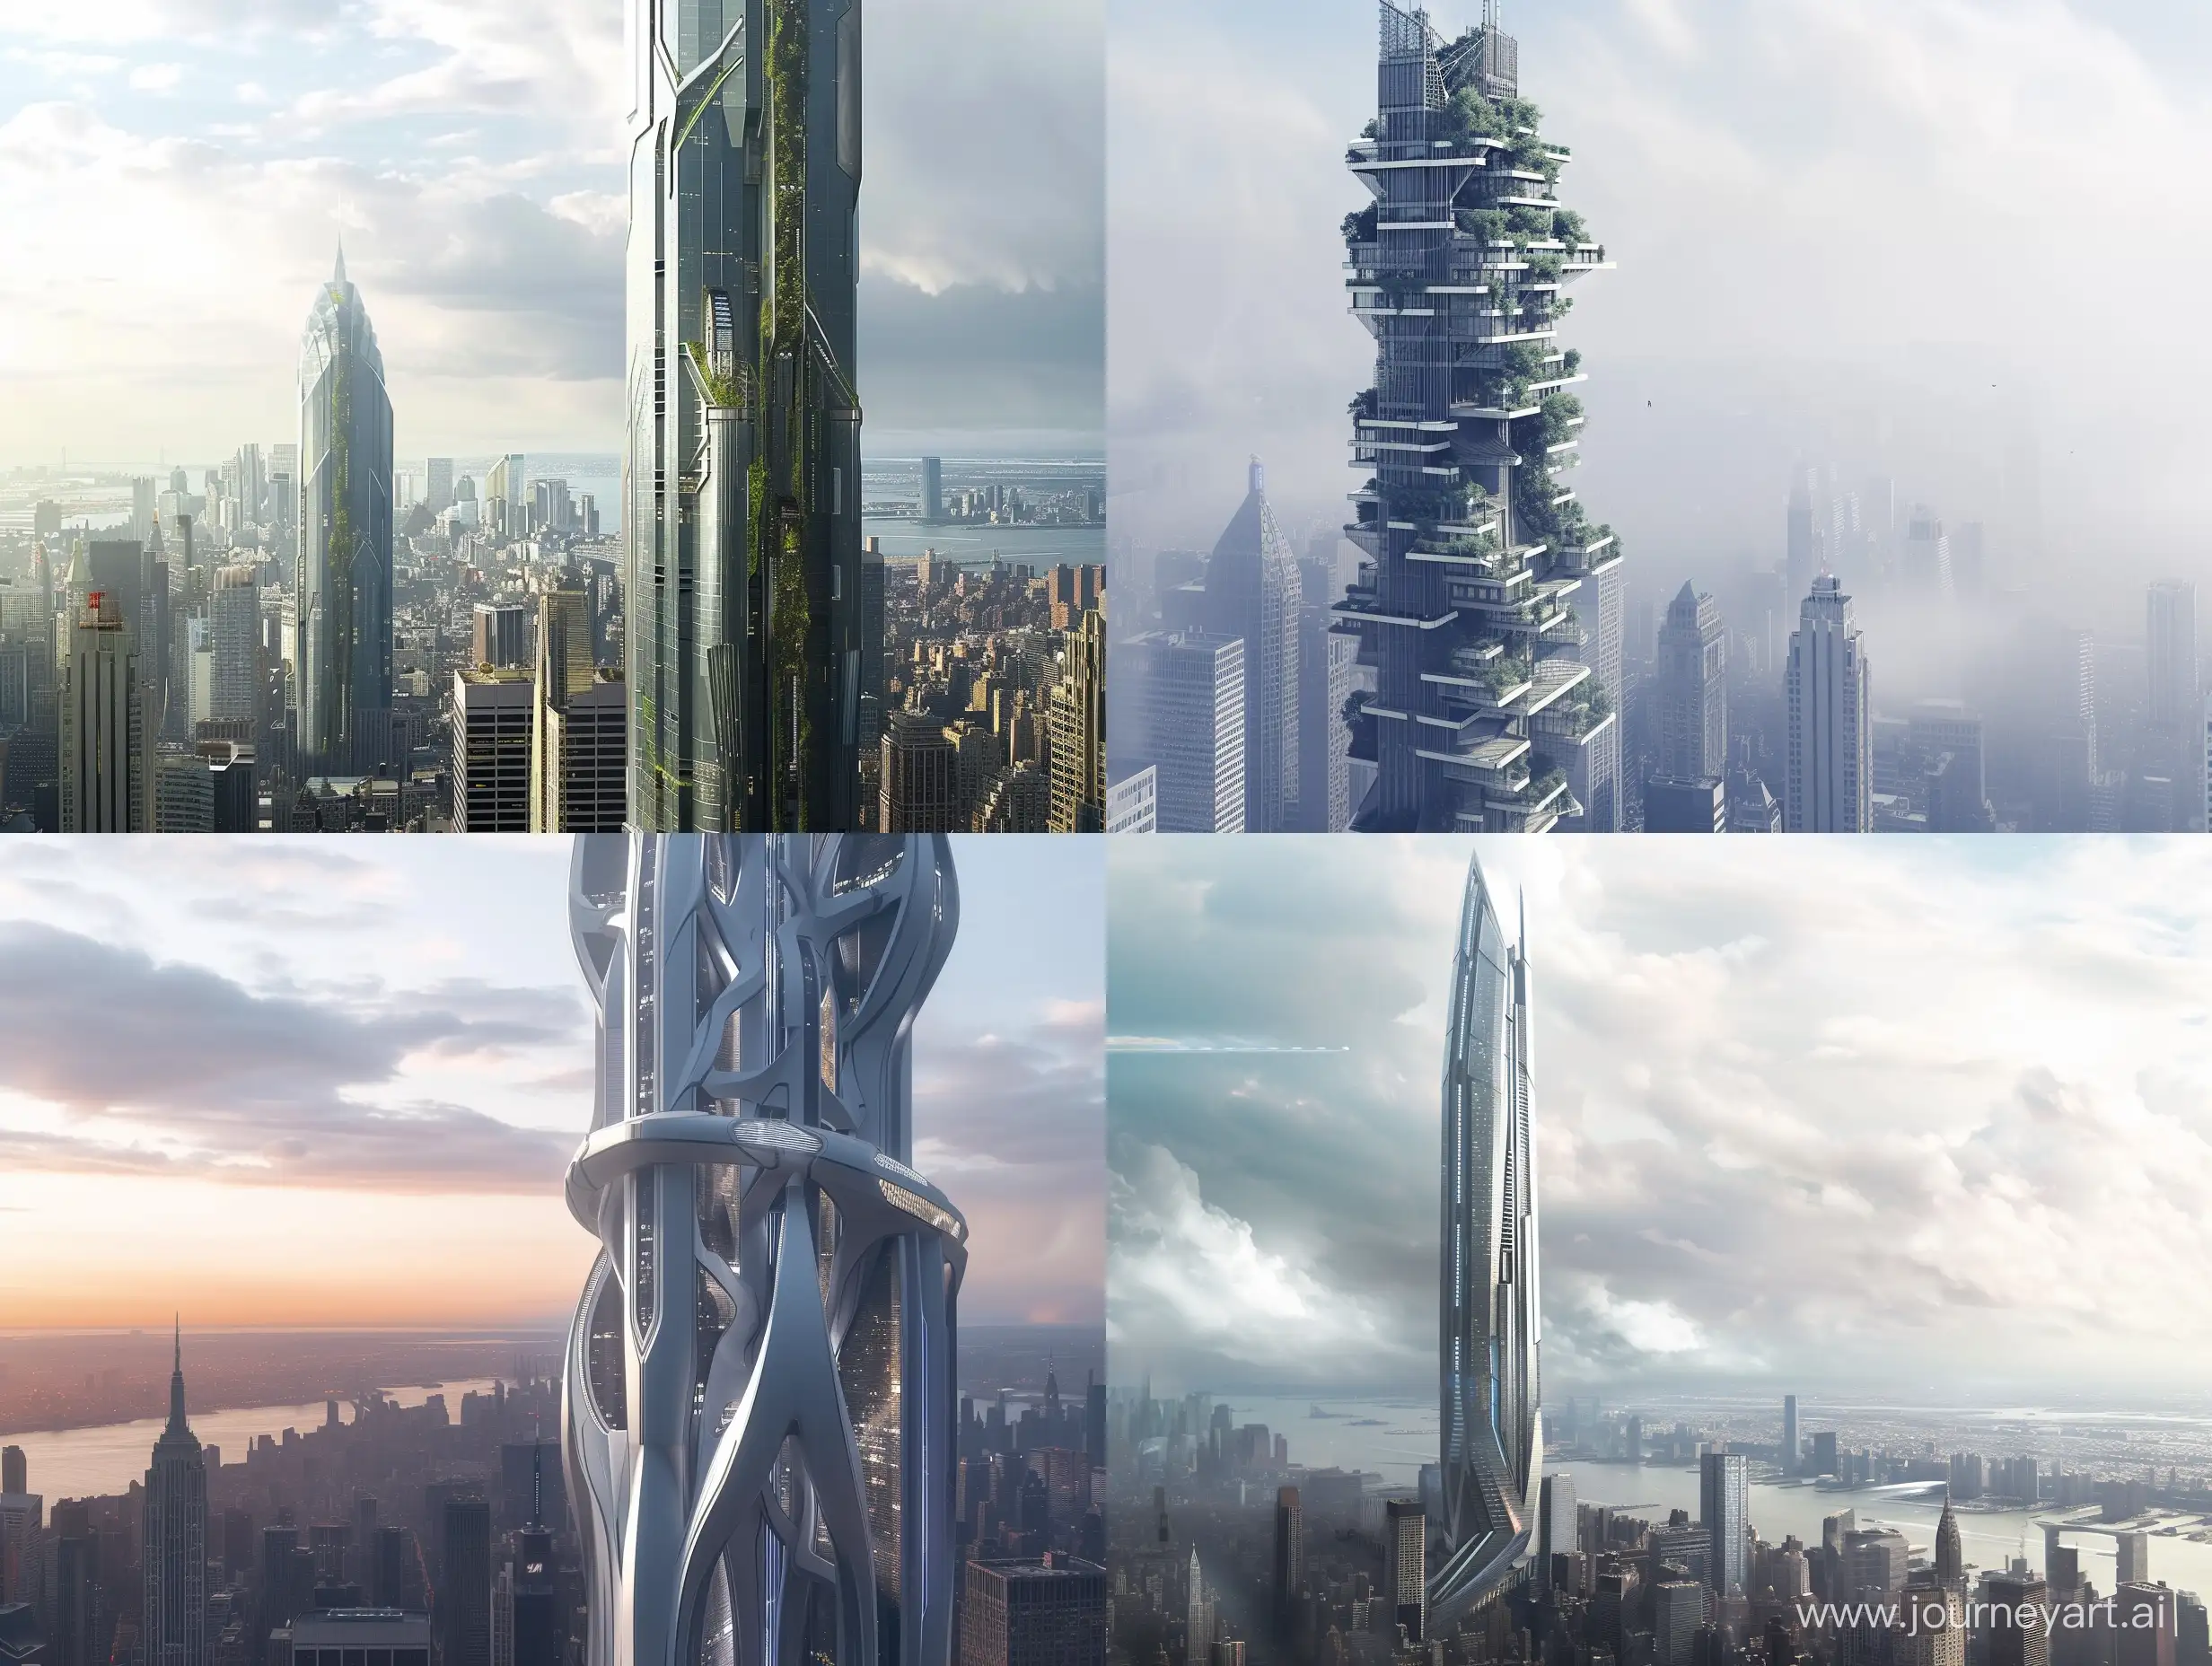 Futuristic-SciFi-Skyscraper-Design-in-Detailed-43-Architecture-New-York-City-Concept